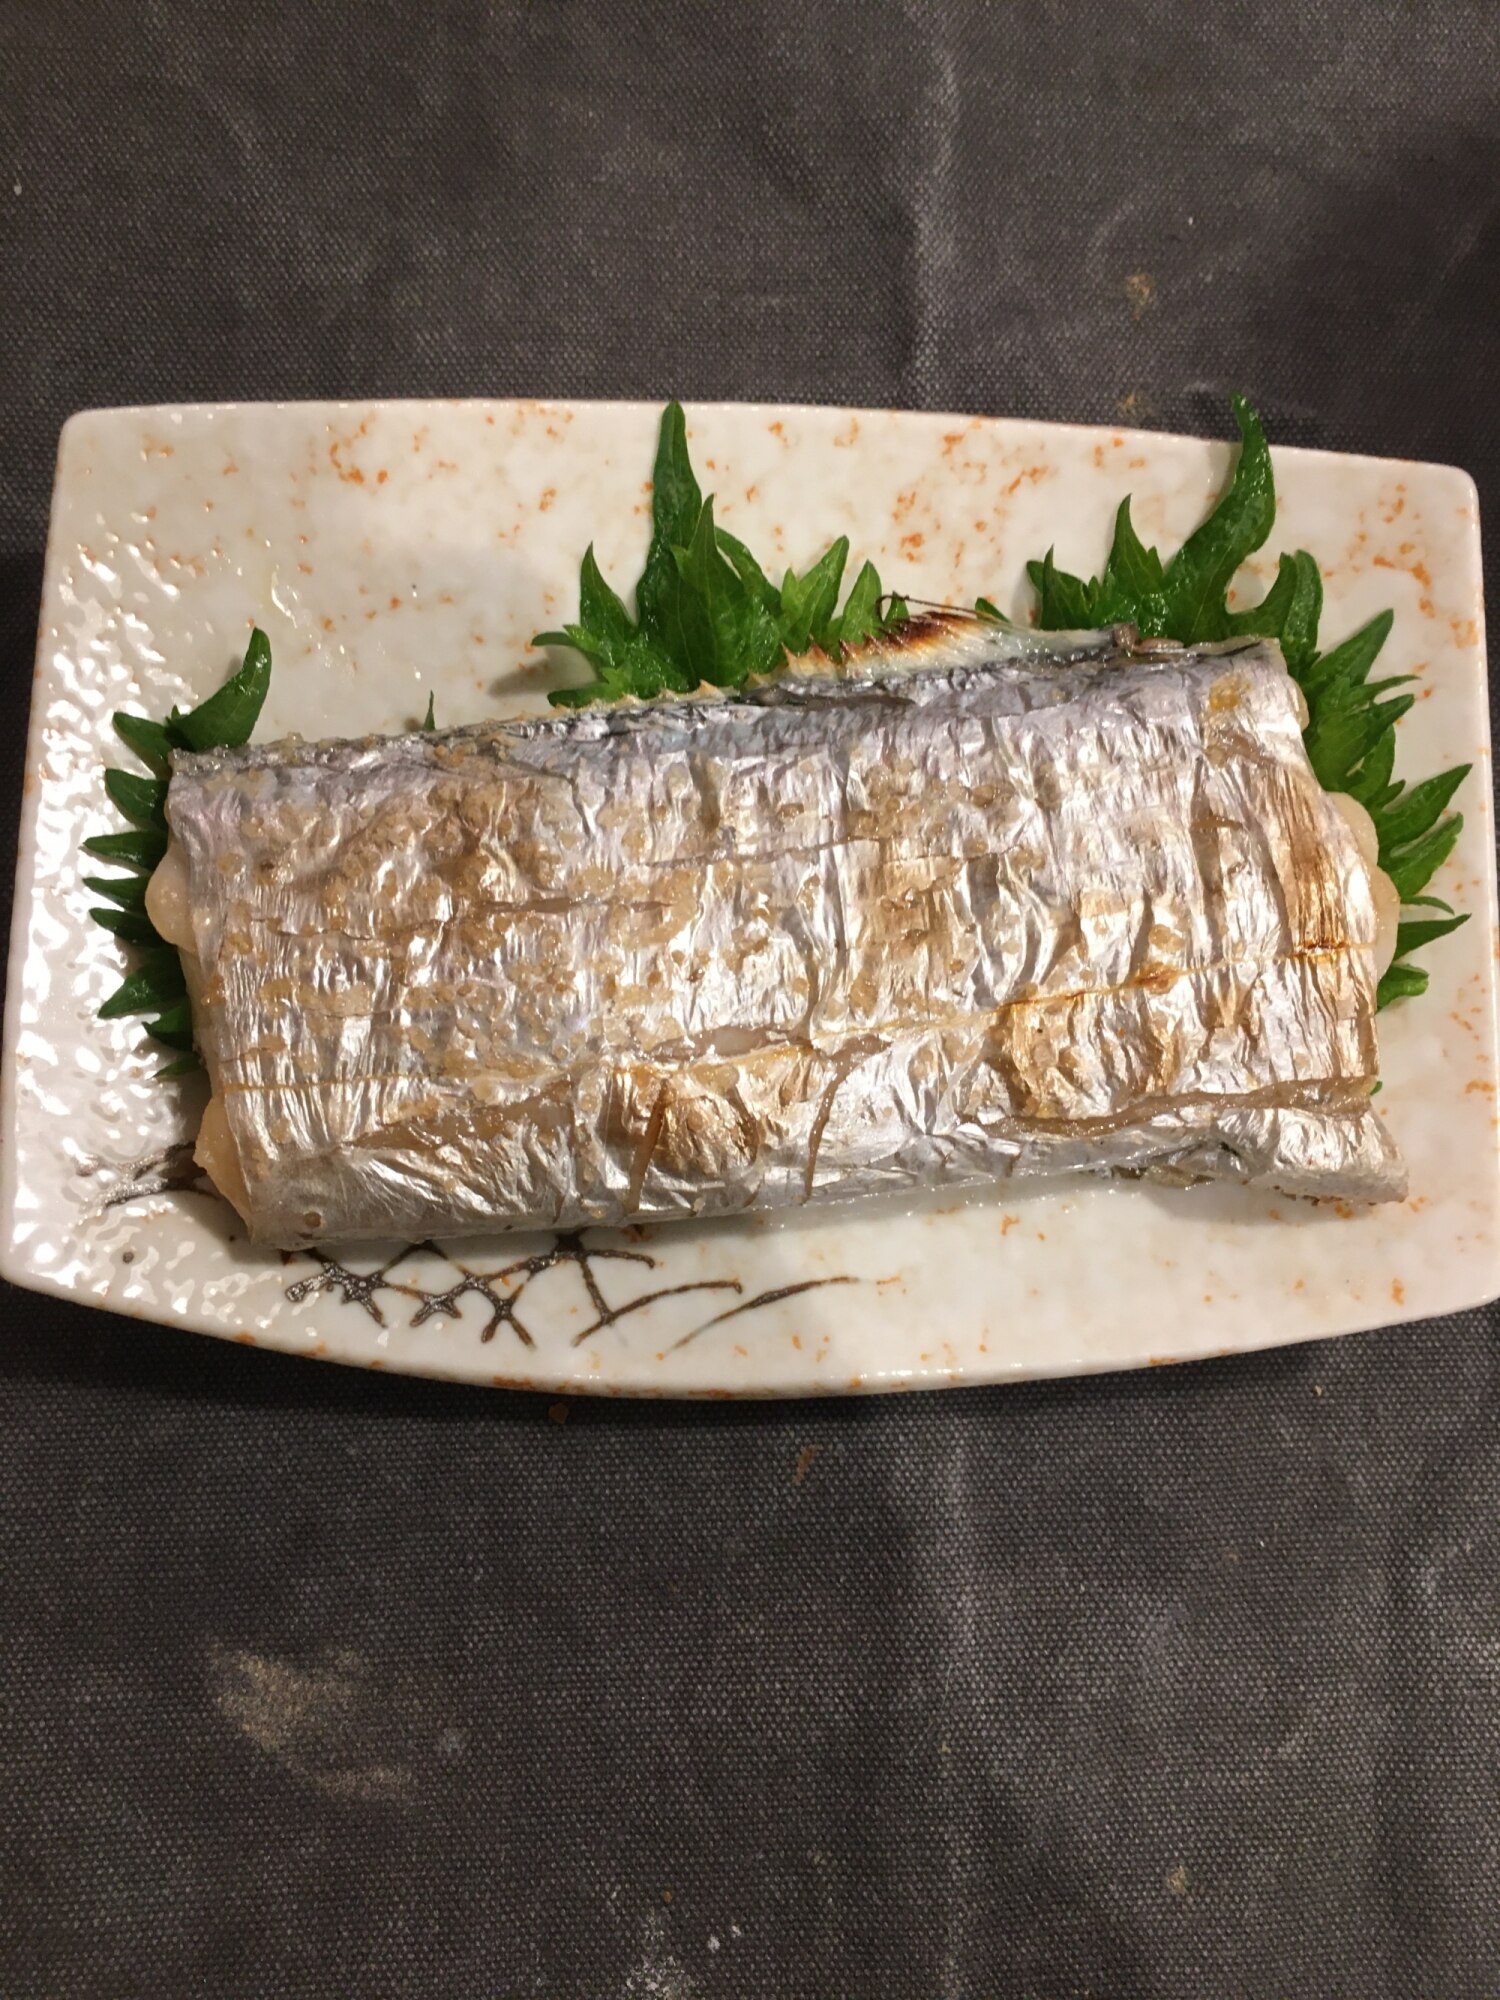 粗塩で食べる 太刀魚 レシピ 作り方 By ちゃんりゅう 楽天レシピ